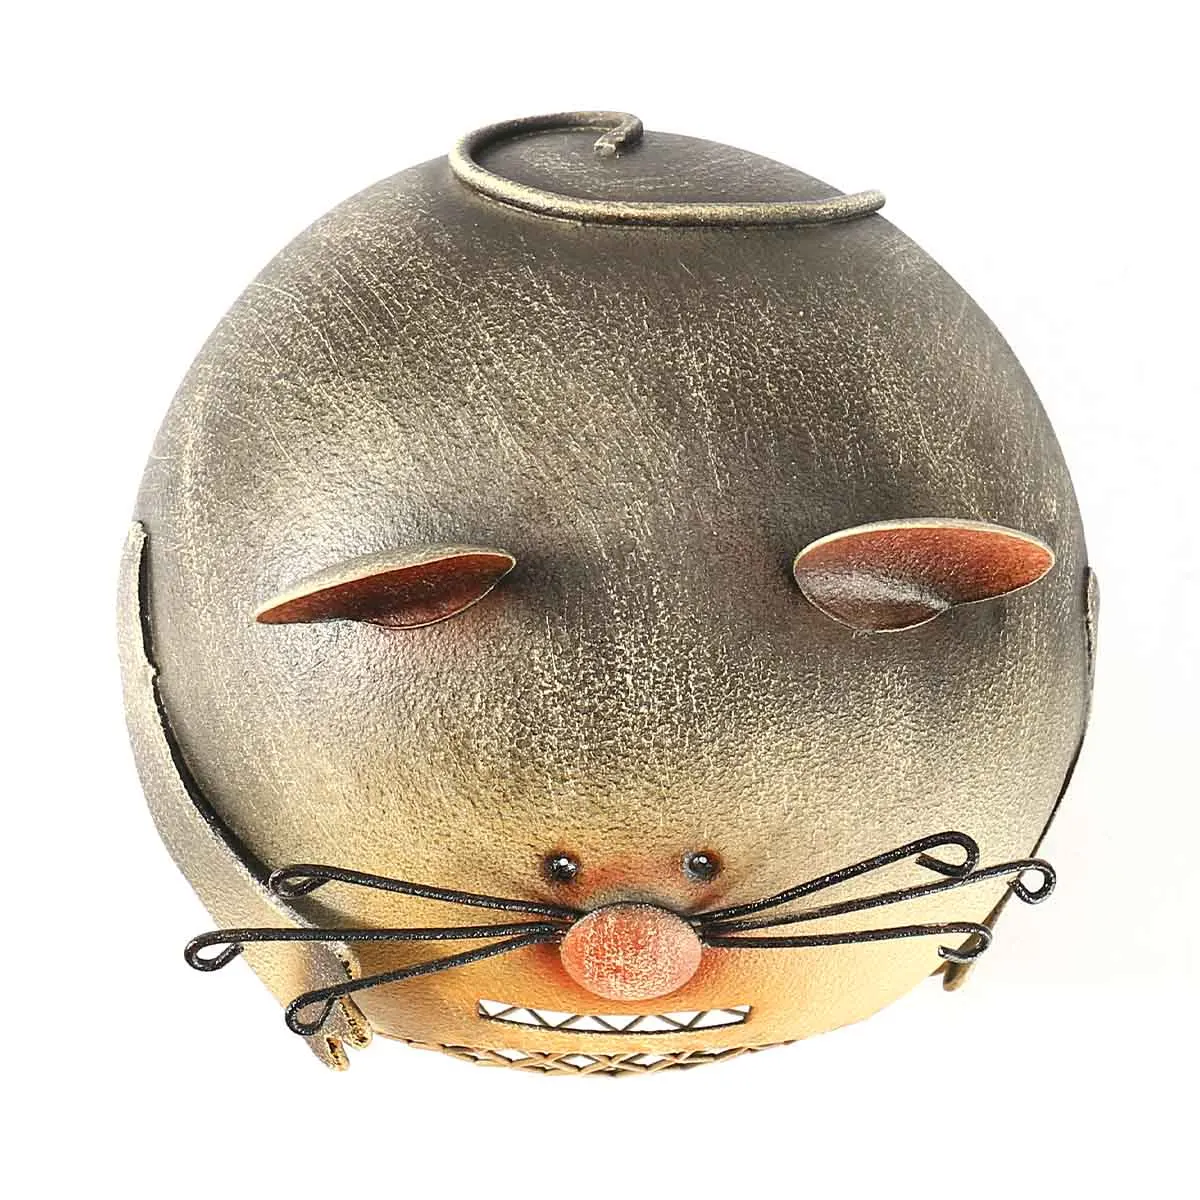 Tooarts монетница в форме мышки Милая монета с изображением животного креативная копилка для животных домашняя декоративная железная скульптура подарок для детей